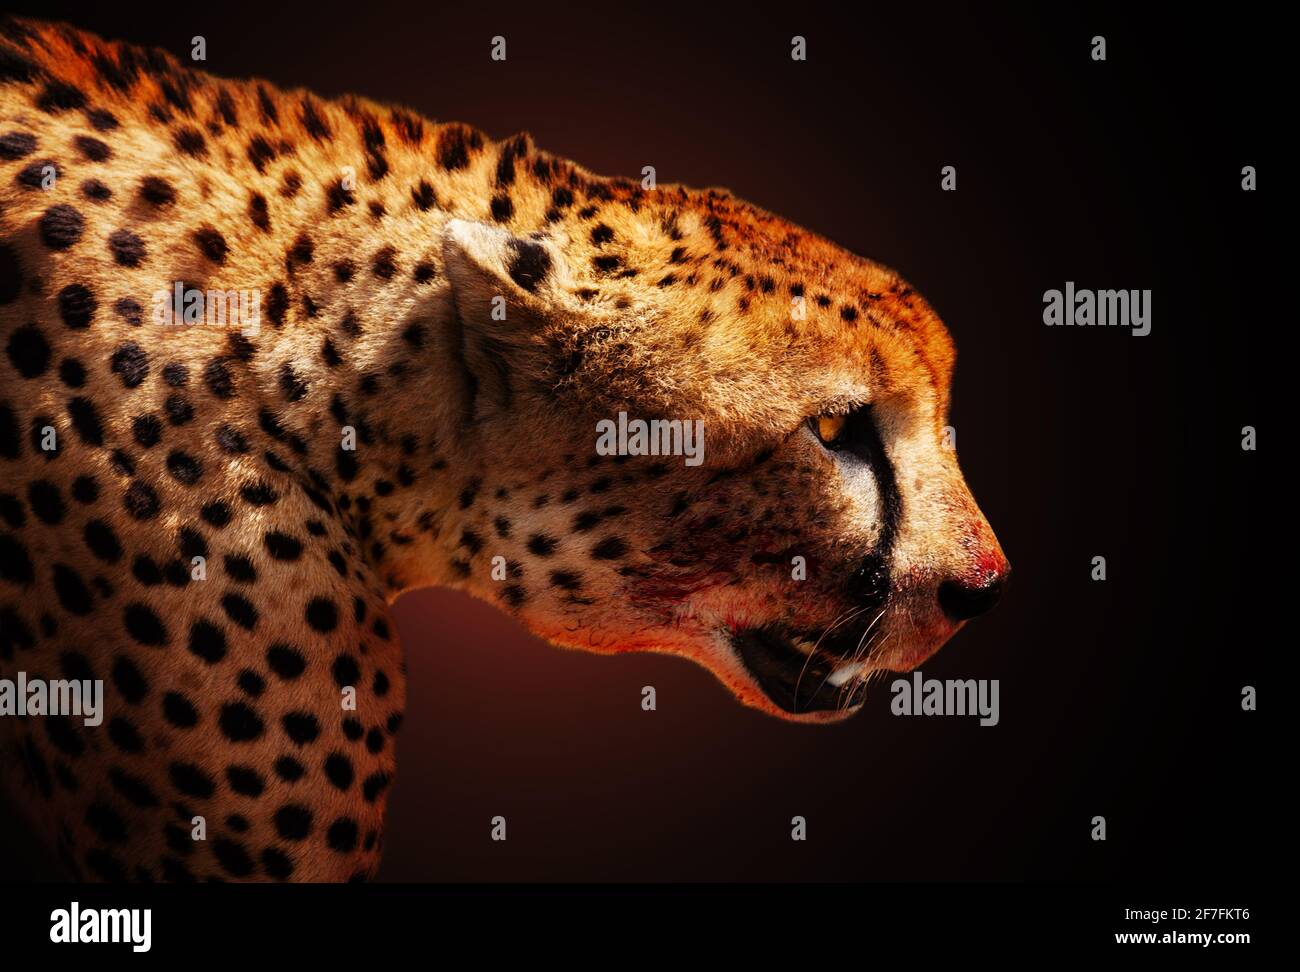 Profil des Killergeparden-Tieres über dunklem Rücken Stockfoto